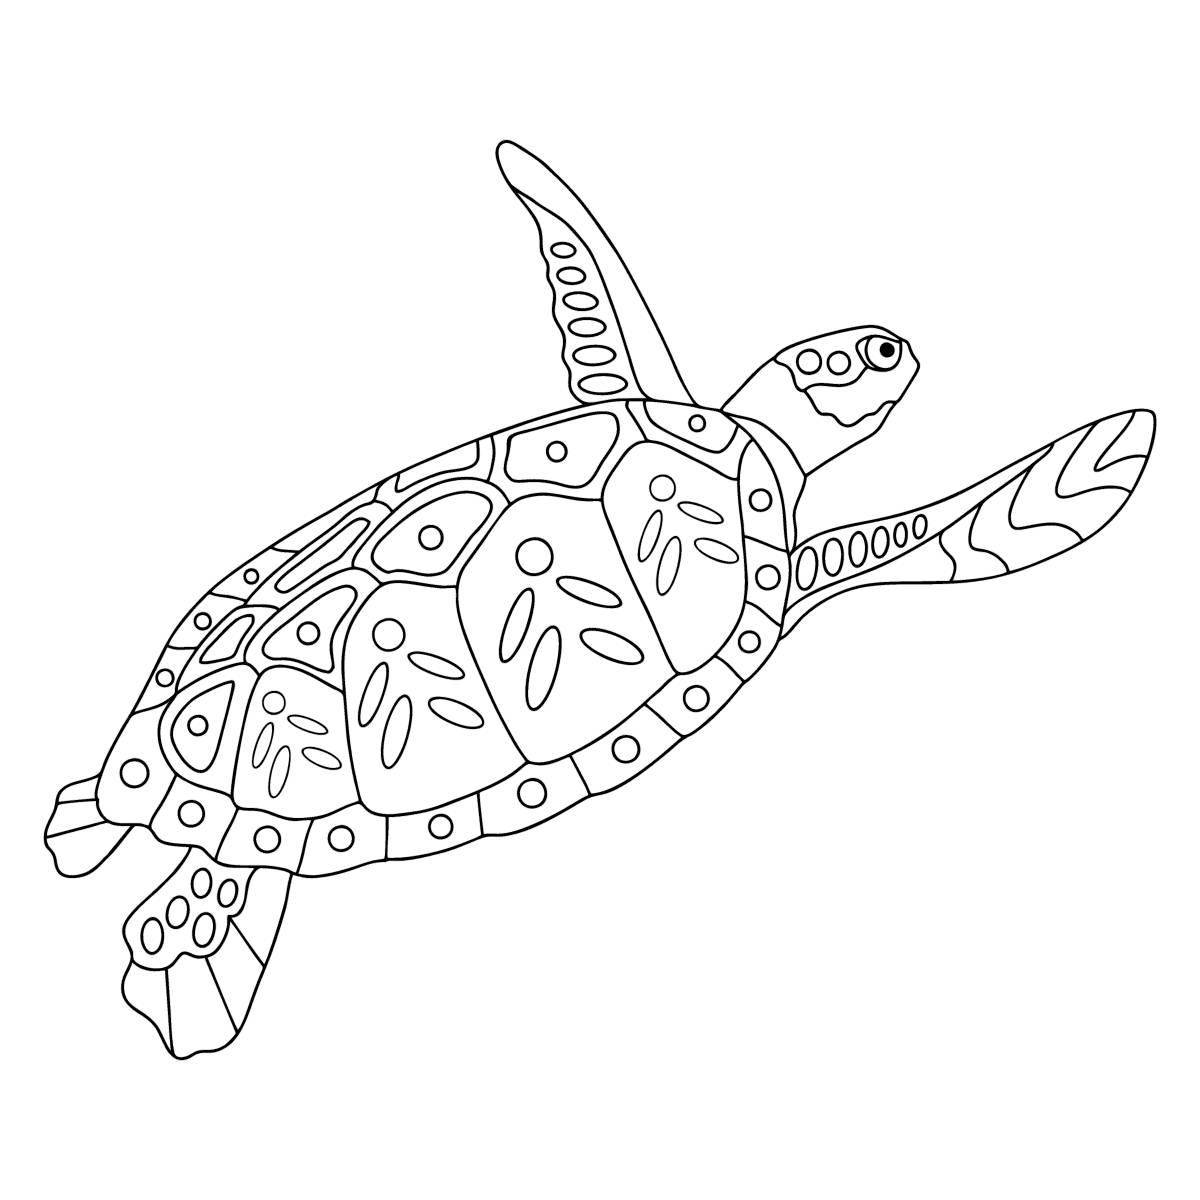 Joyful anti-stress turtle coloring book